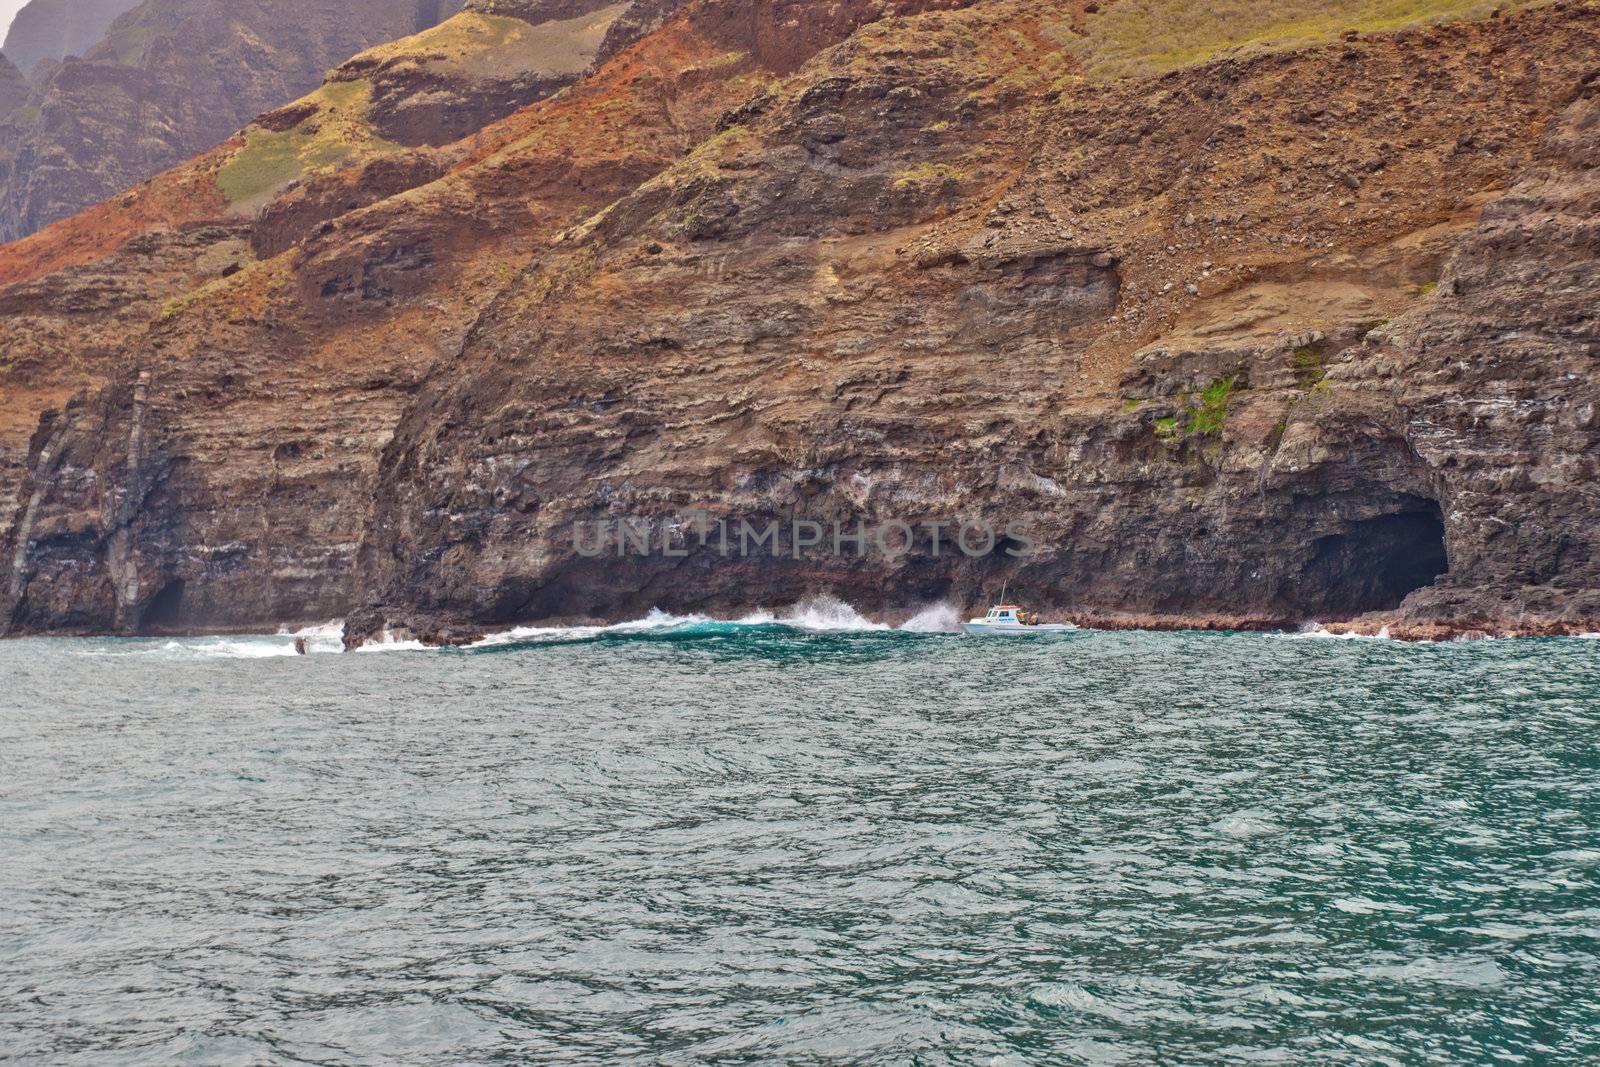 landscape of Hawaii's Na Pali Coastline on the island of Kauai.

